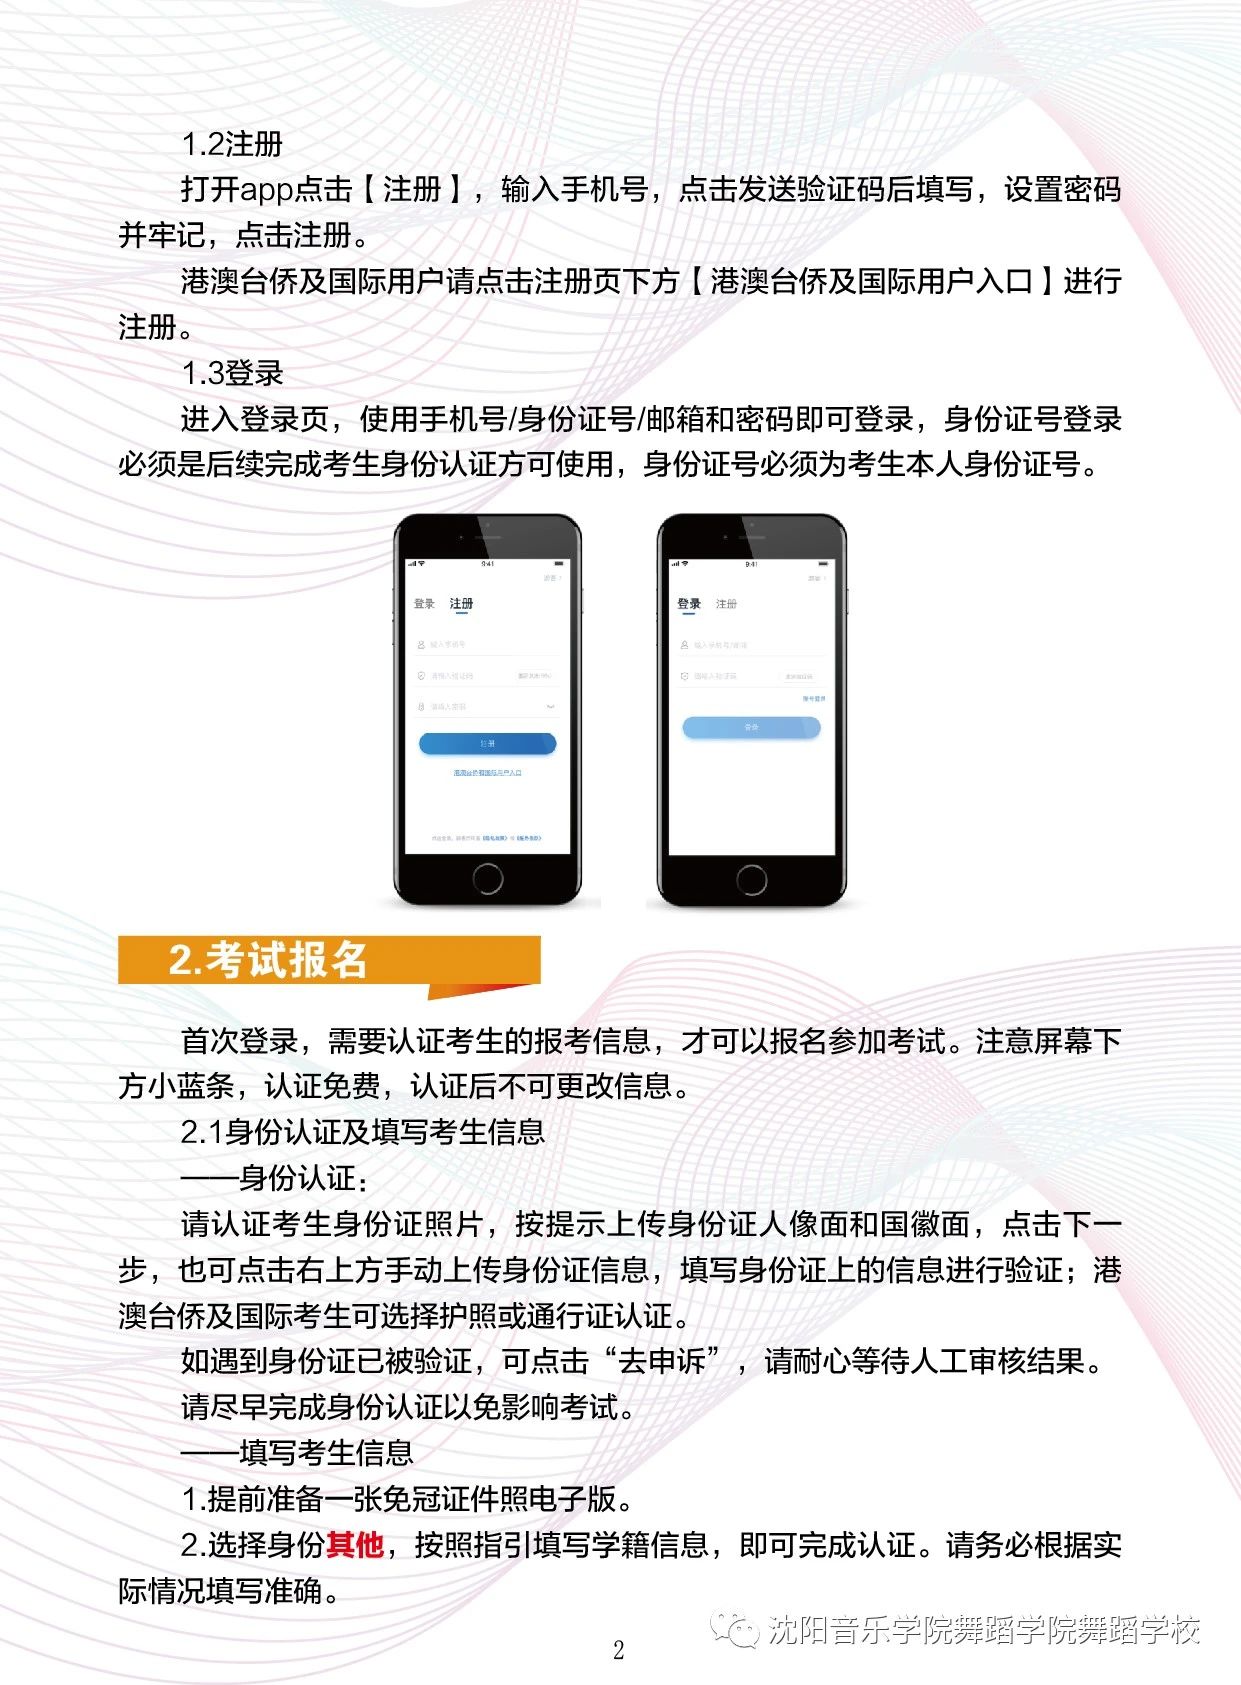 2021年沈阳音乐学院附属中等舞蹈学校招生考试小艺帮APP2.0版本用户操作手册